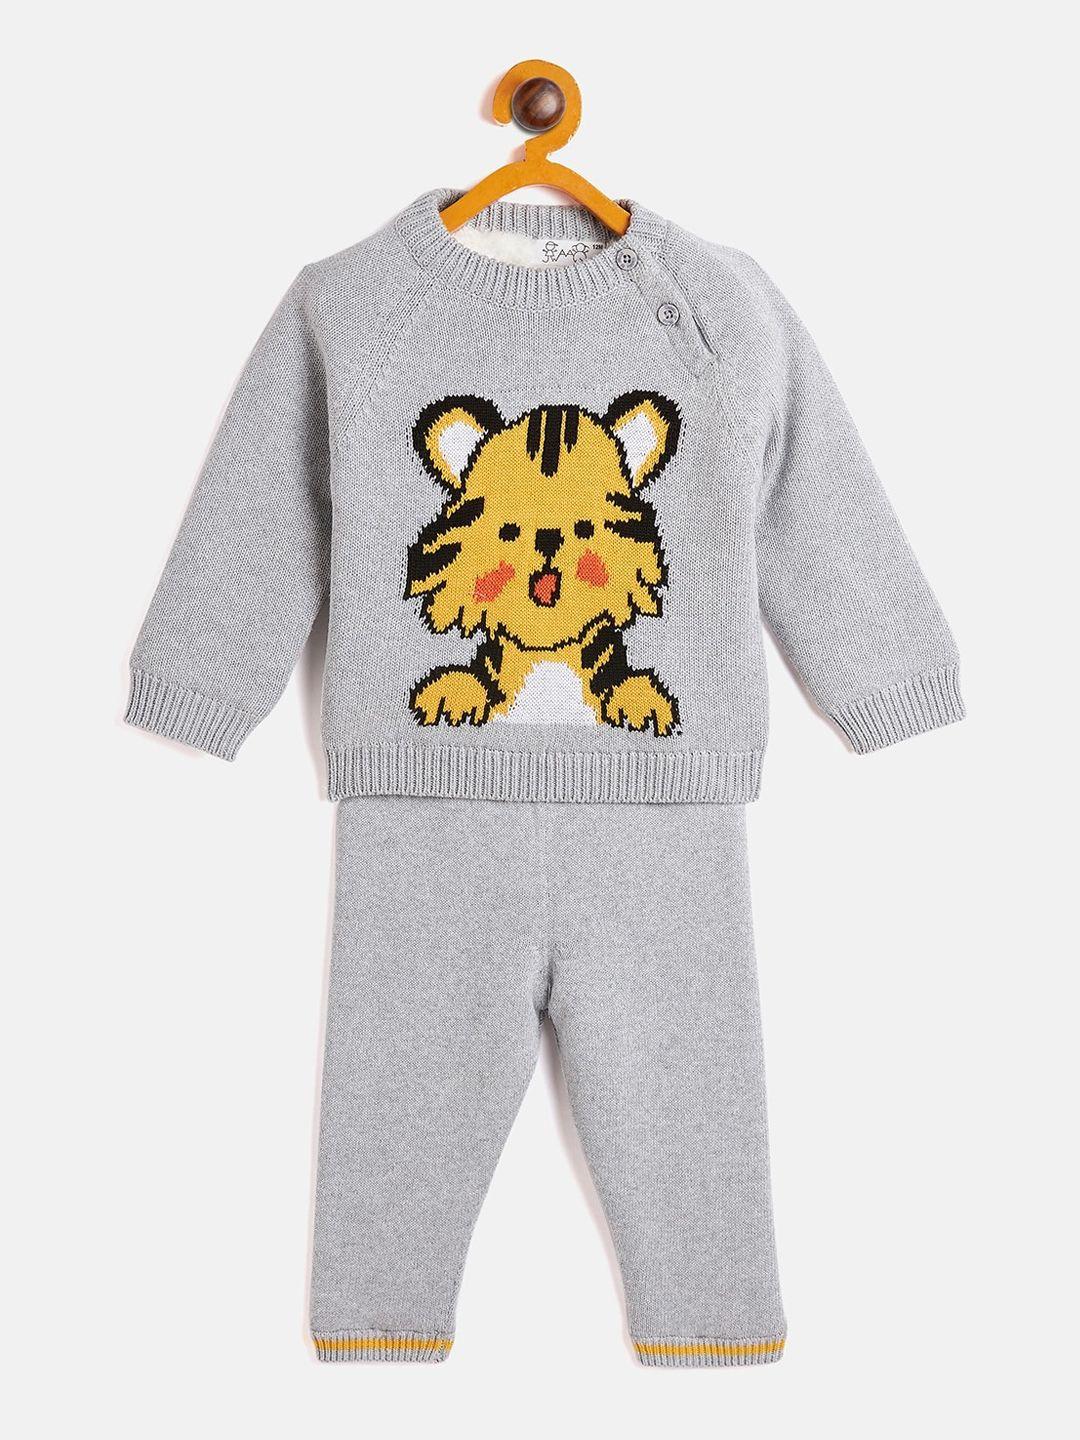 jwaaq unisex kids grey melange printed top with pyjamas